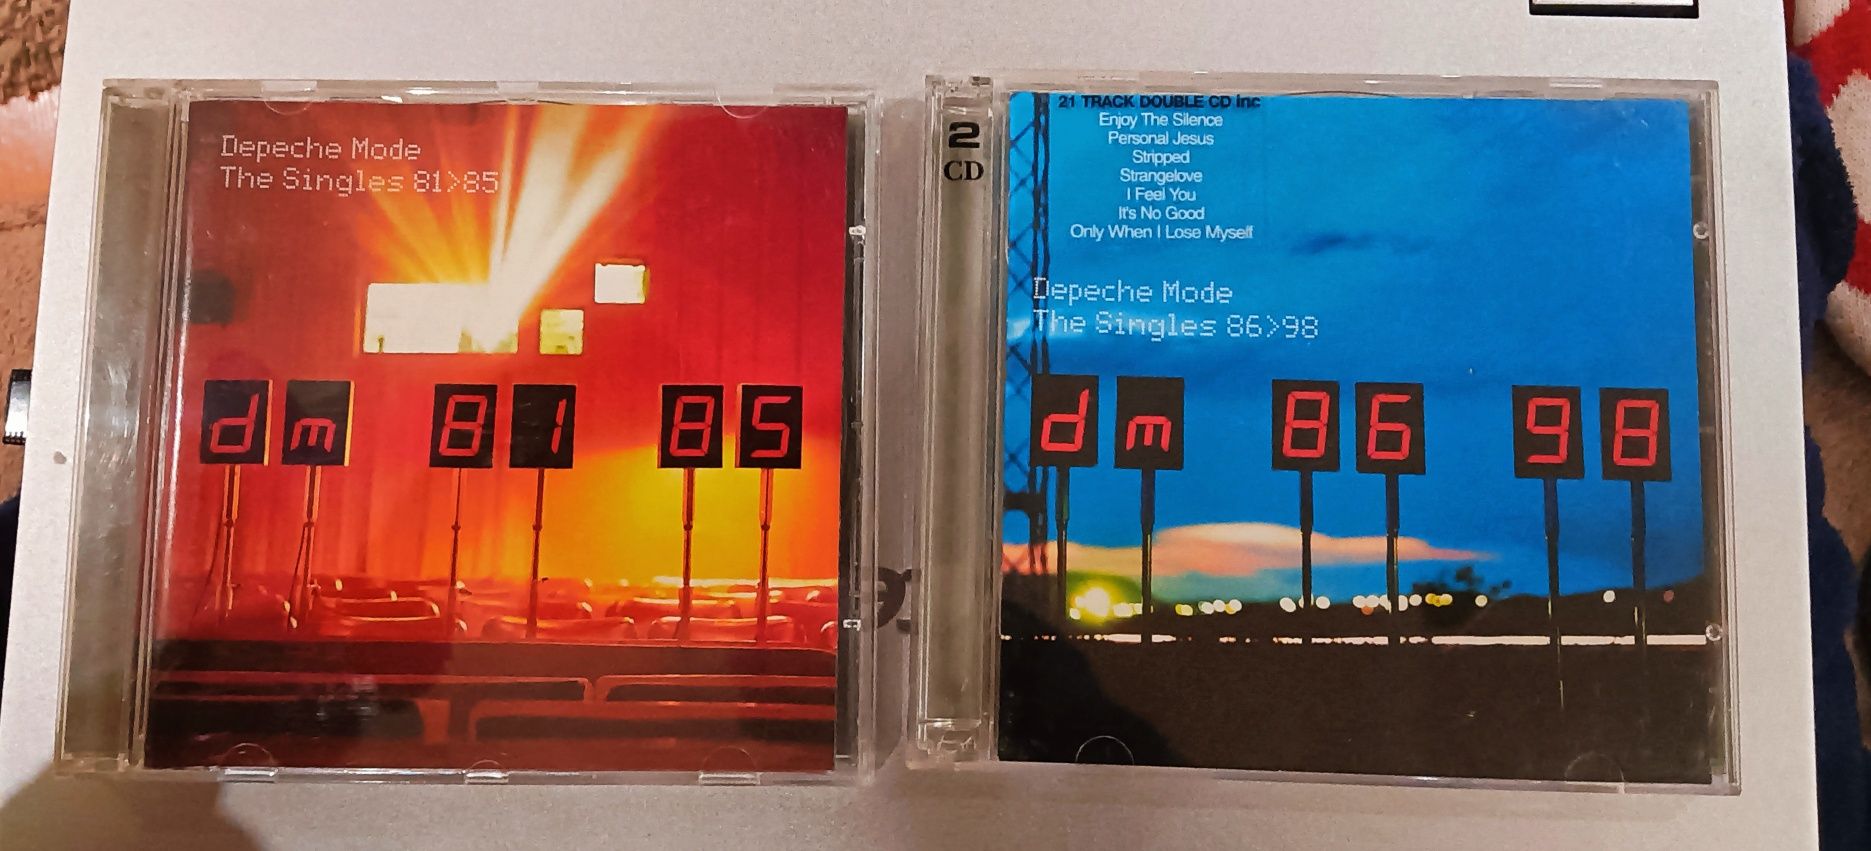 Depeche Mode - CDs